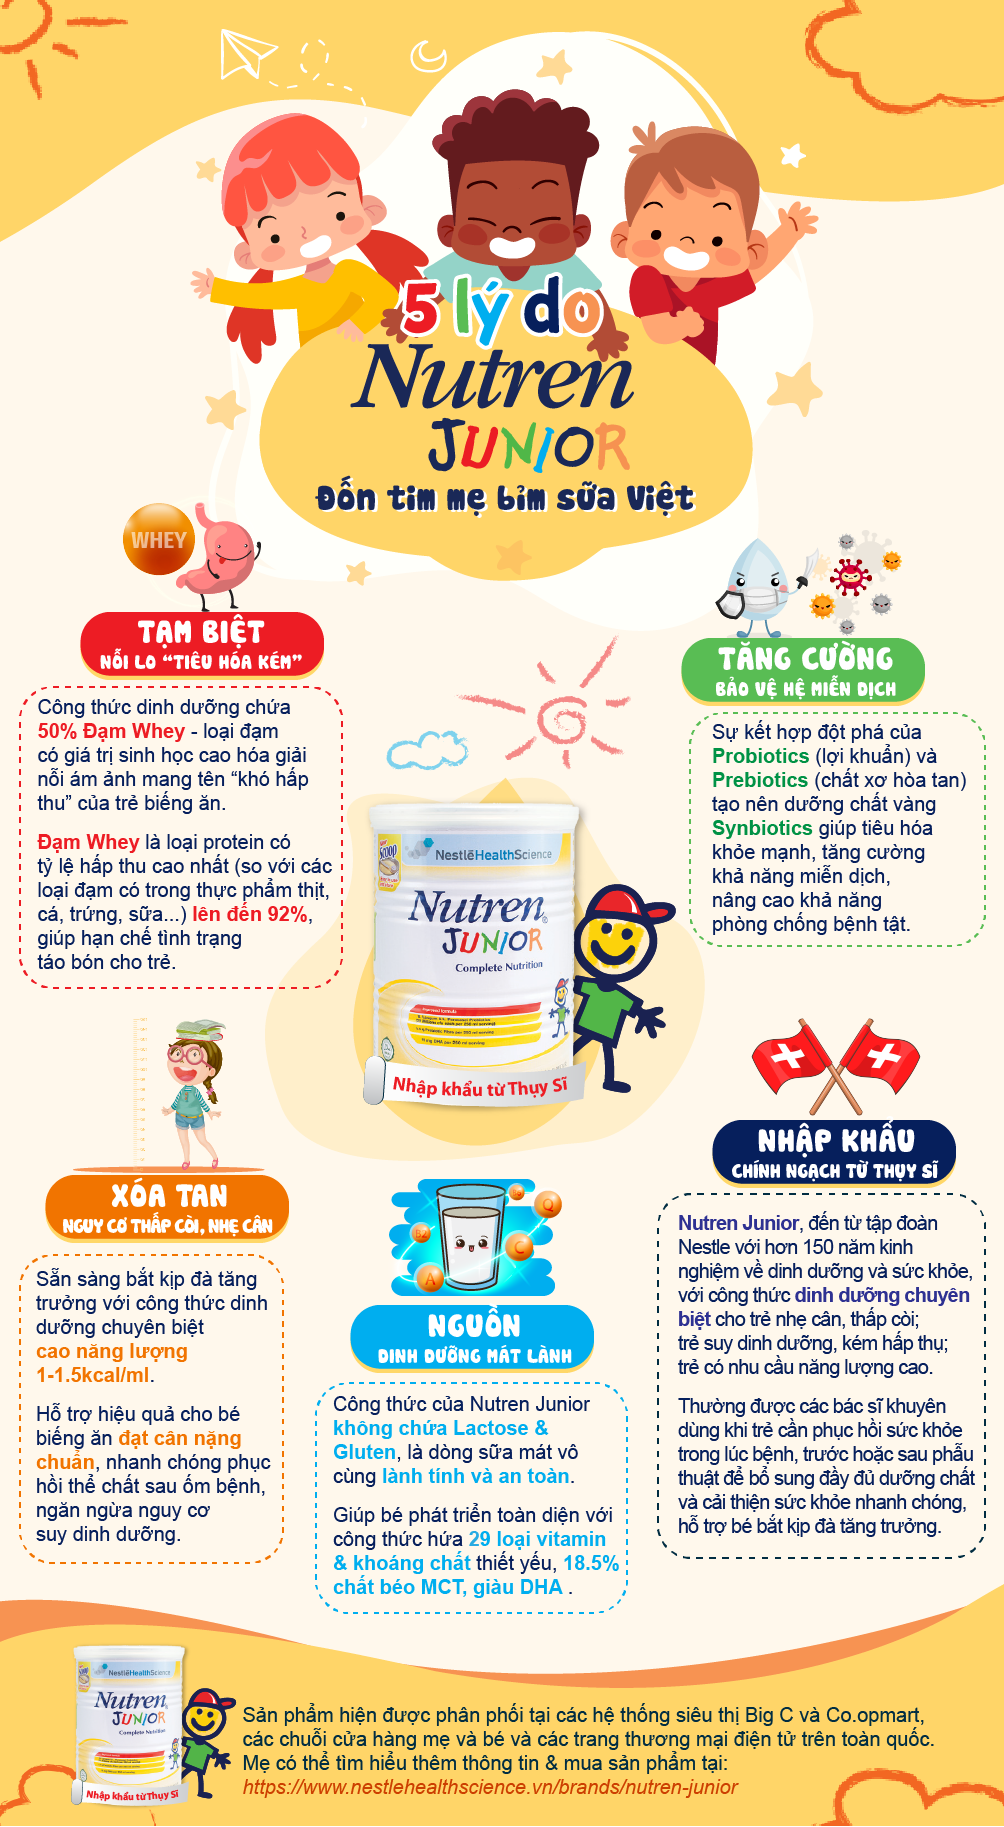 5 lý do Nutren Junior “đốn tim” mẹ bỉm sữa Việt  - 1